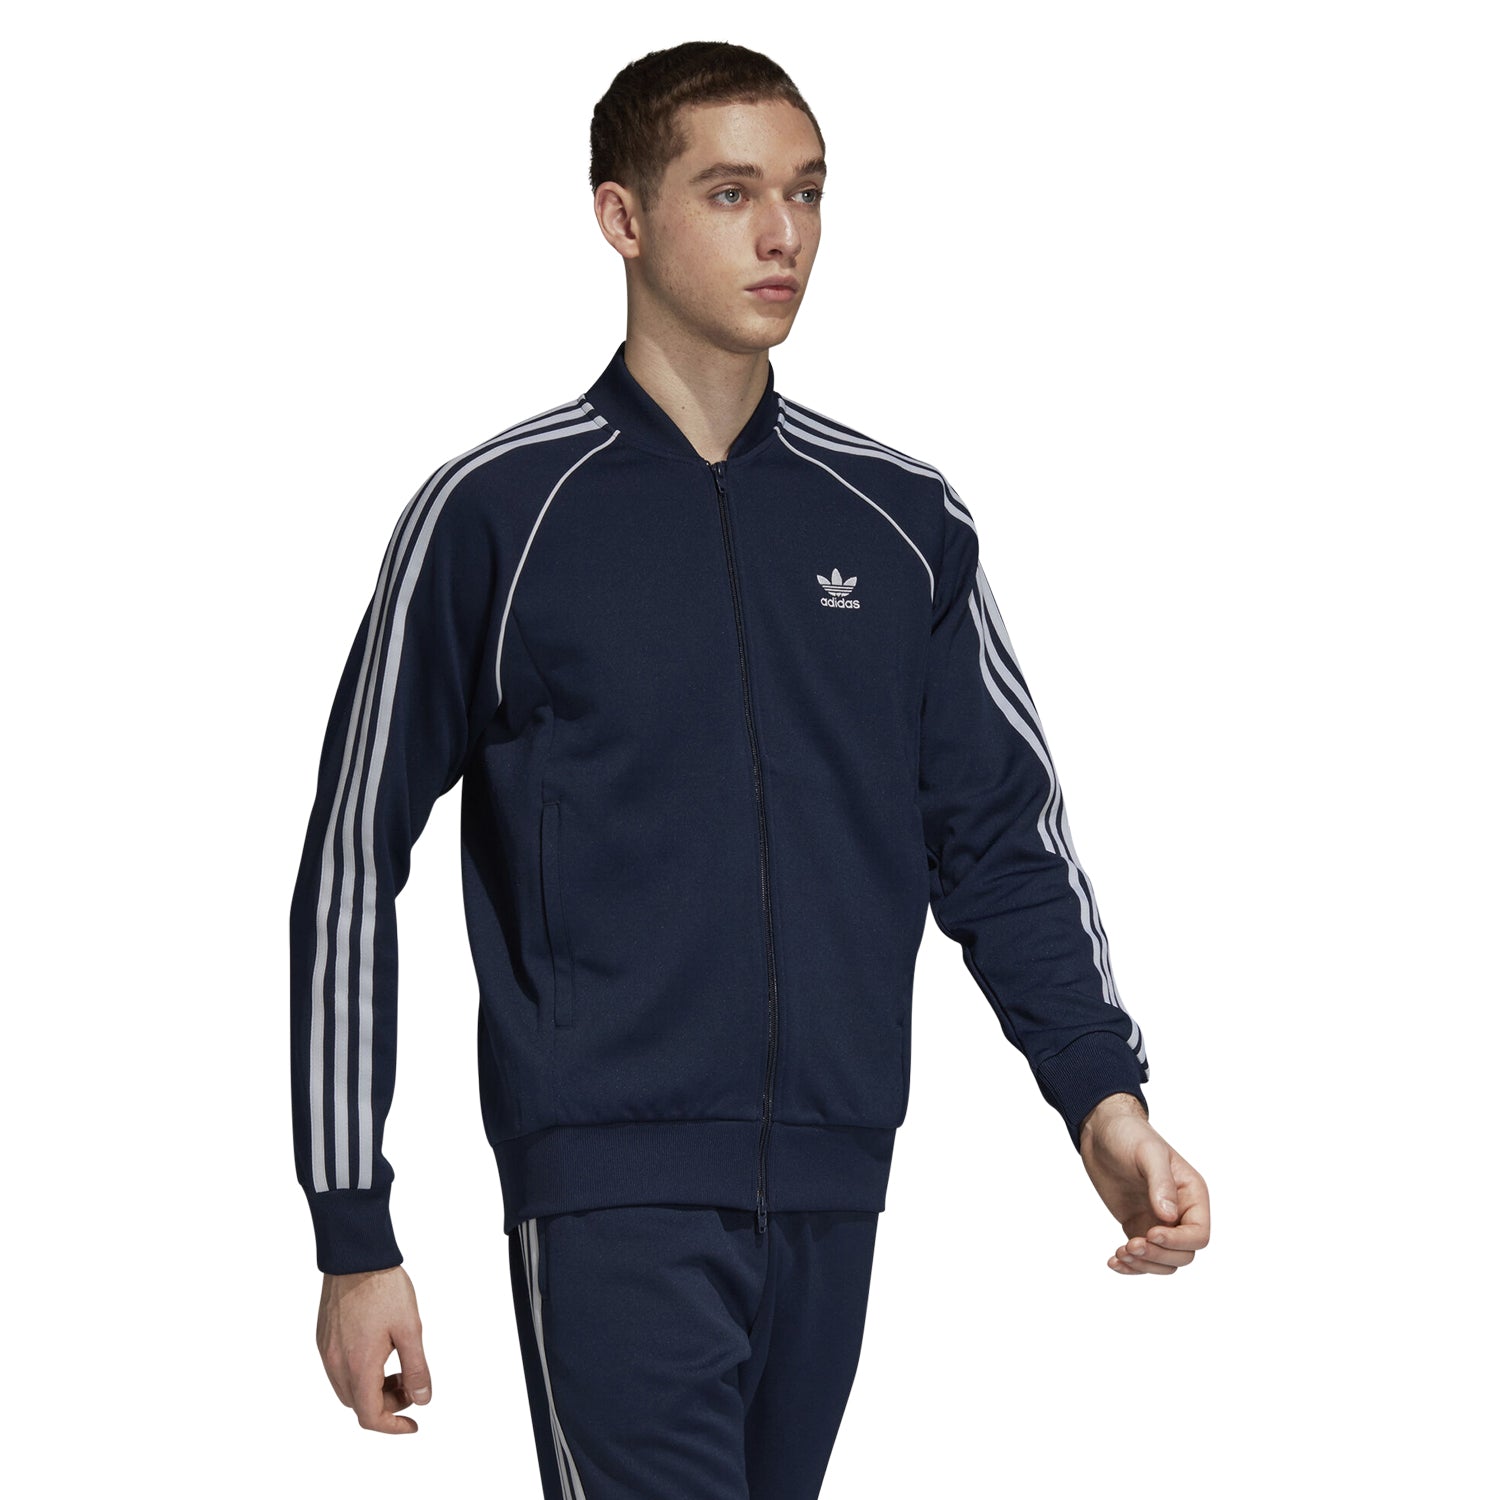 adidas superstar track jacket navy